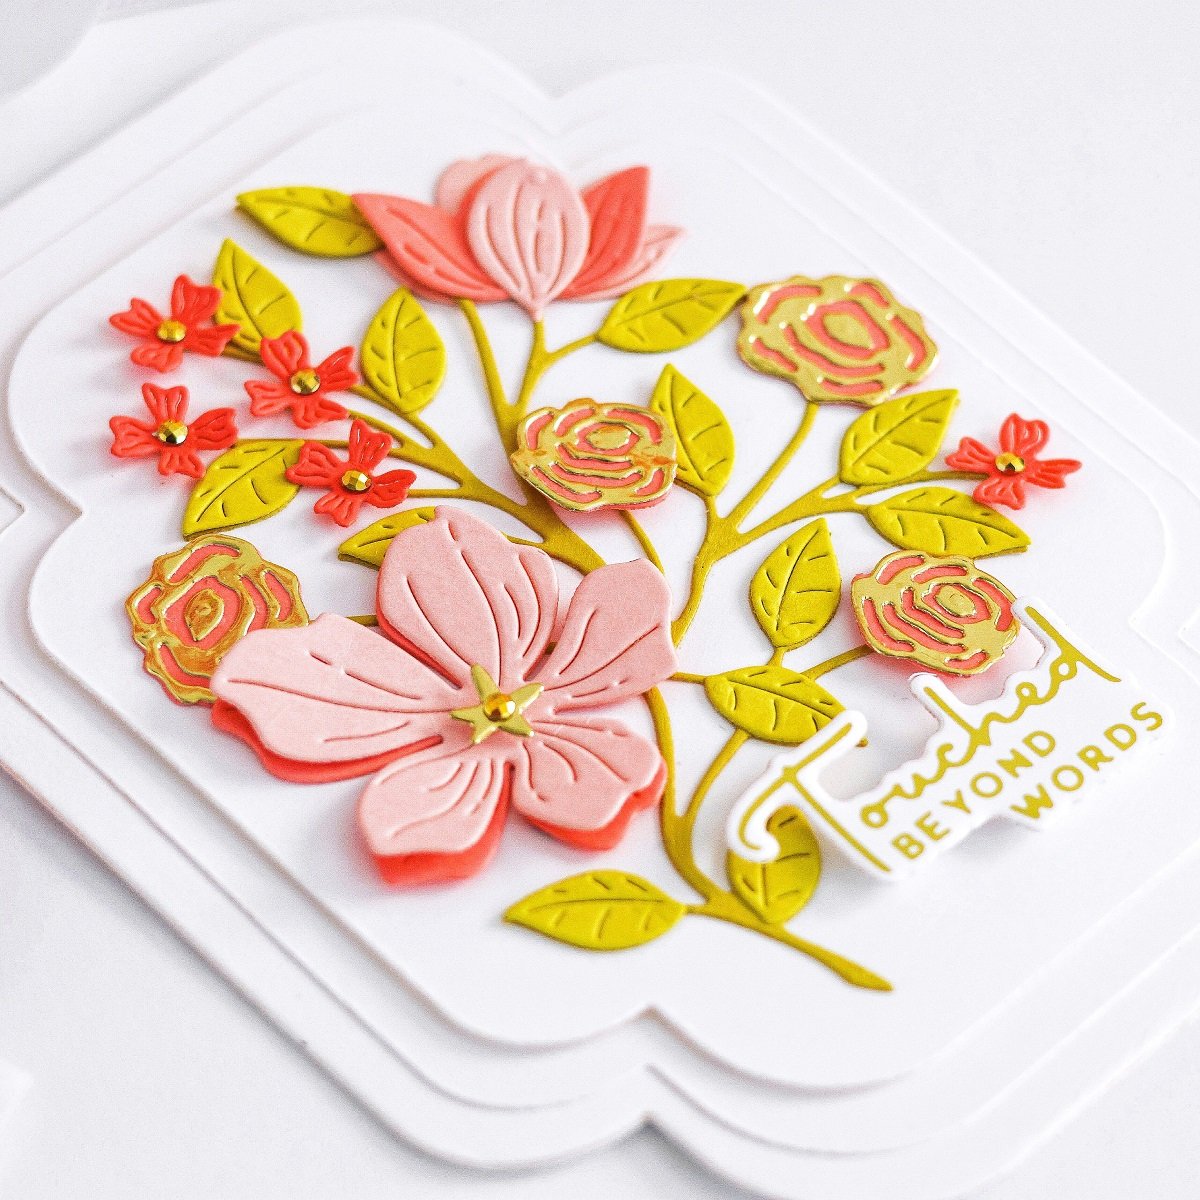 Spellbinders - 3D Embossing Folders - Four Petal Floral